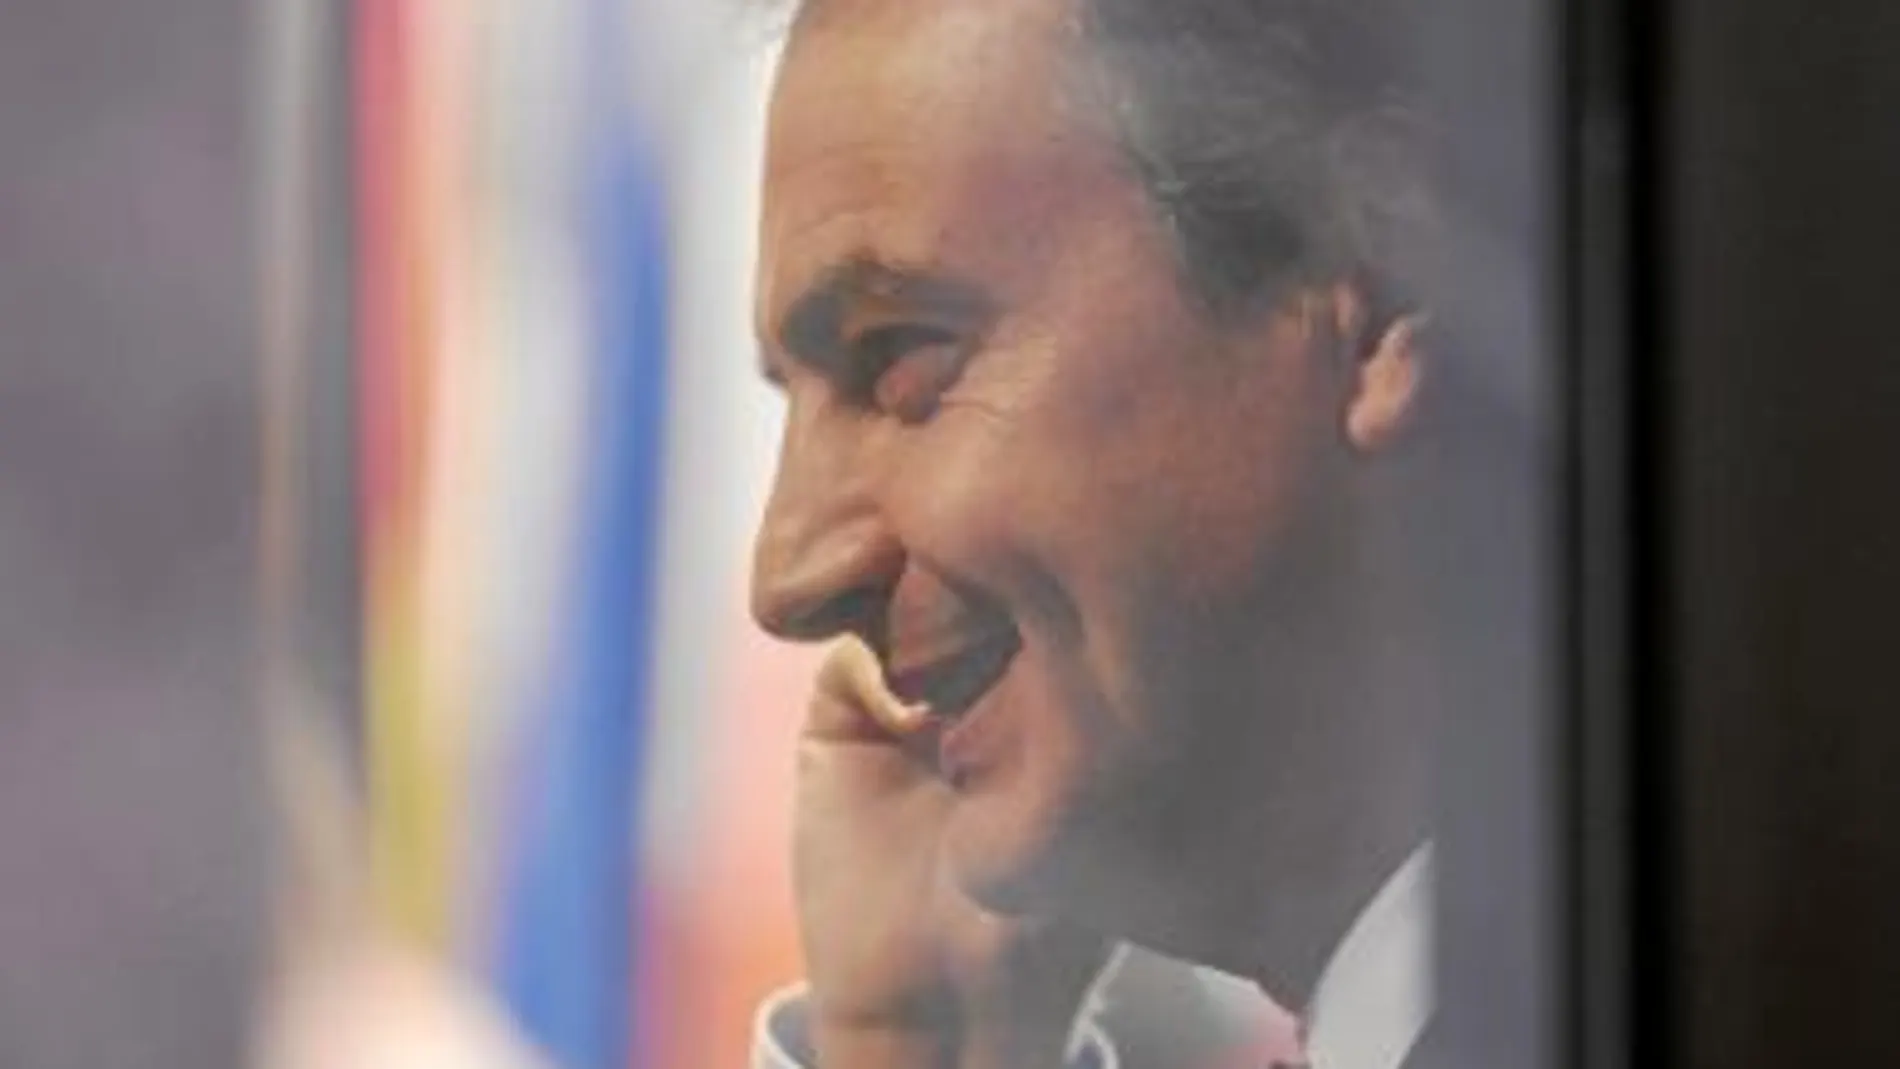 El debate seguirá en campaña aunque Zapatero anuncie el 2 de abril su retirada